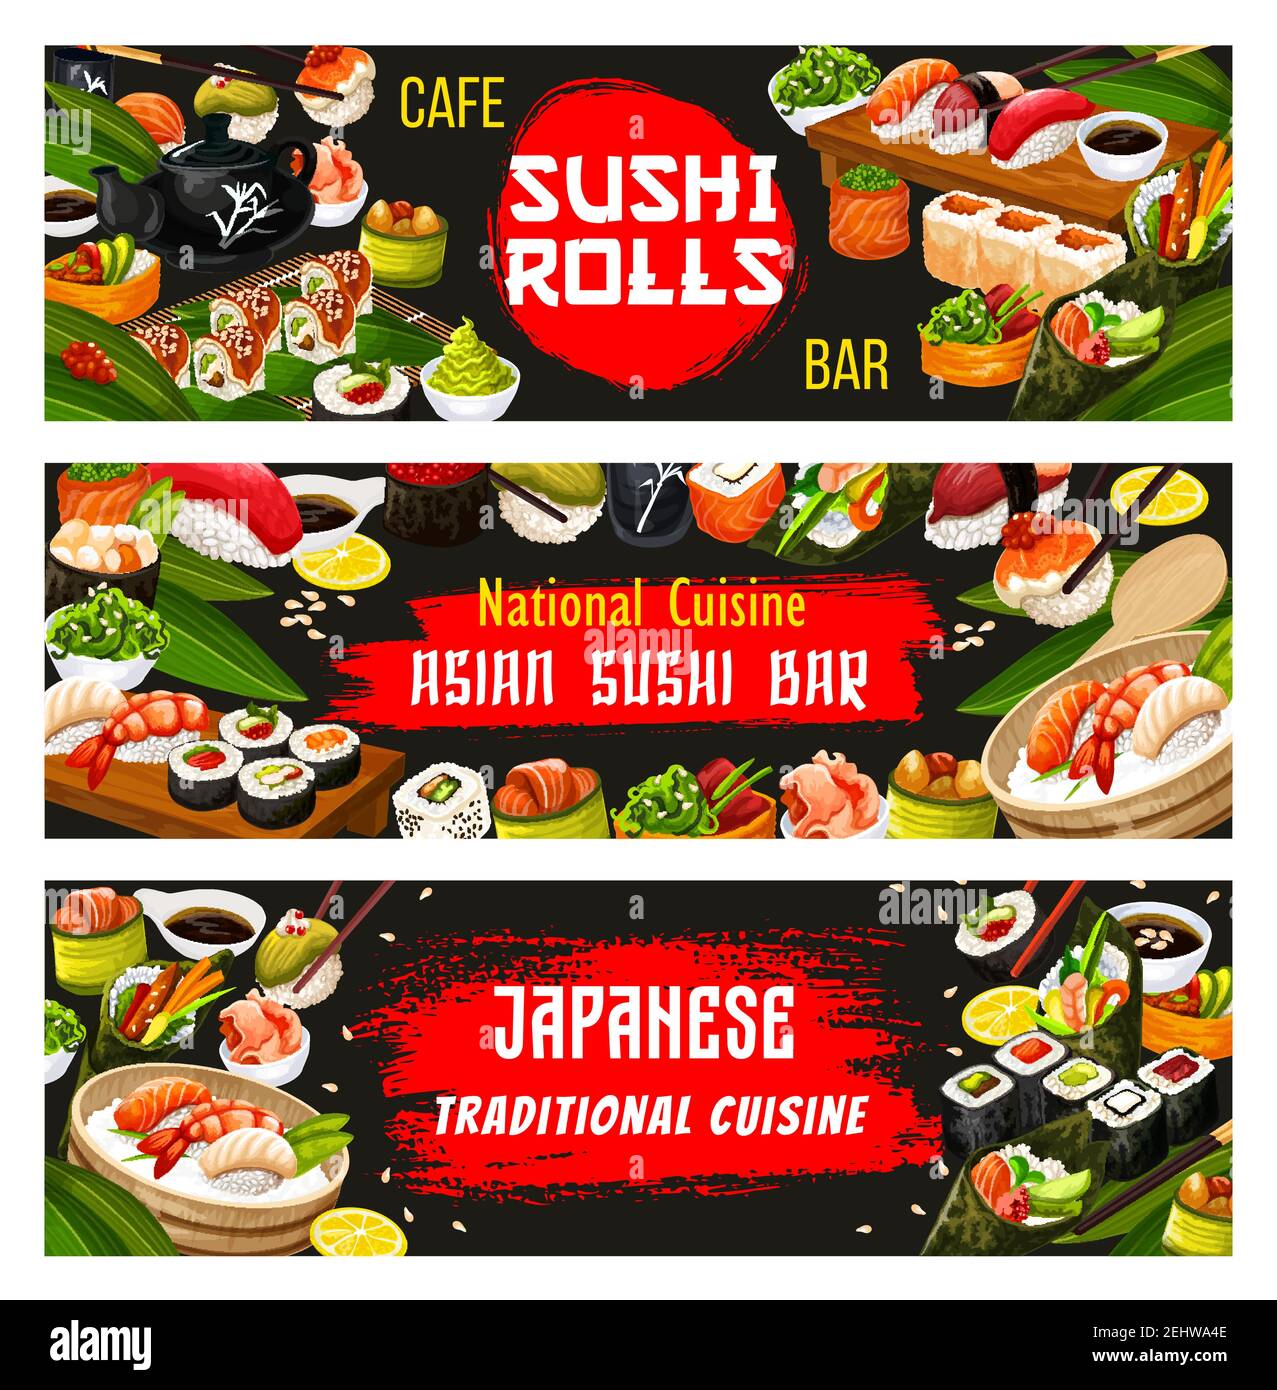 Japanische Sushi-Bar Banner für asiatische nationale Küche Restaurant-Menü. Vector Japan traditionelle Gerichte der Sashimi Rolle mit Meeresfrüchten, unagi Maki o Stock Vektor